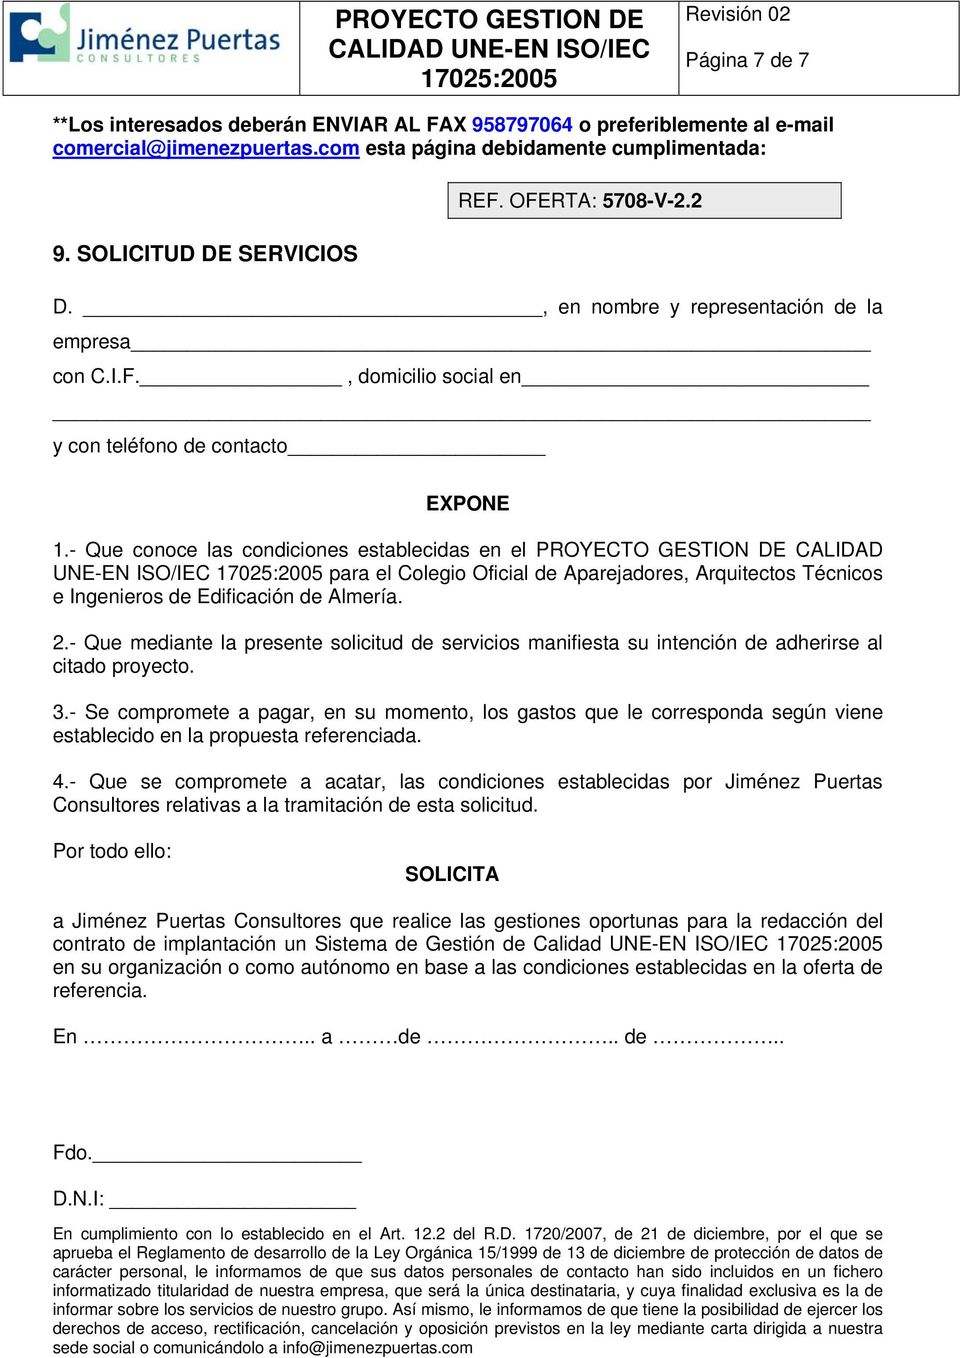 - Que conoce las condiciones establecidas en el PROYECTO GESTION DE CALIDAD UNE-EN ISO/IEC para el Colegio Oficial de Aparejadores, Arquitectos Técnicos e Ingenieros de Edificación de Almería. 2.